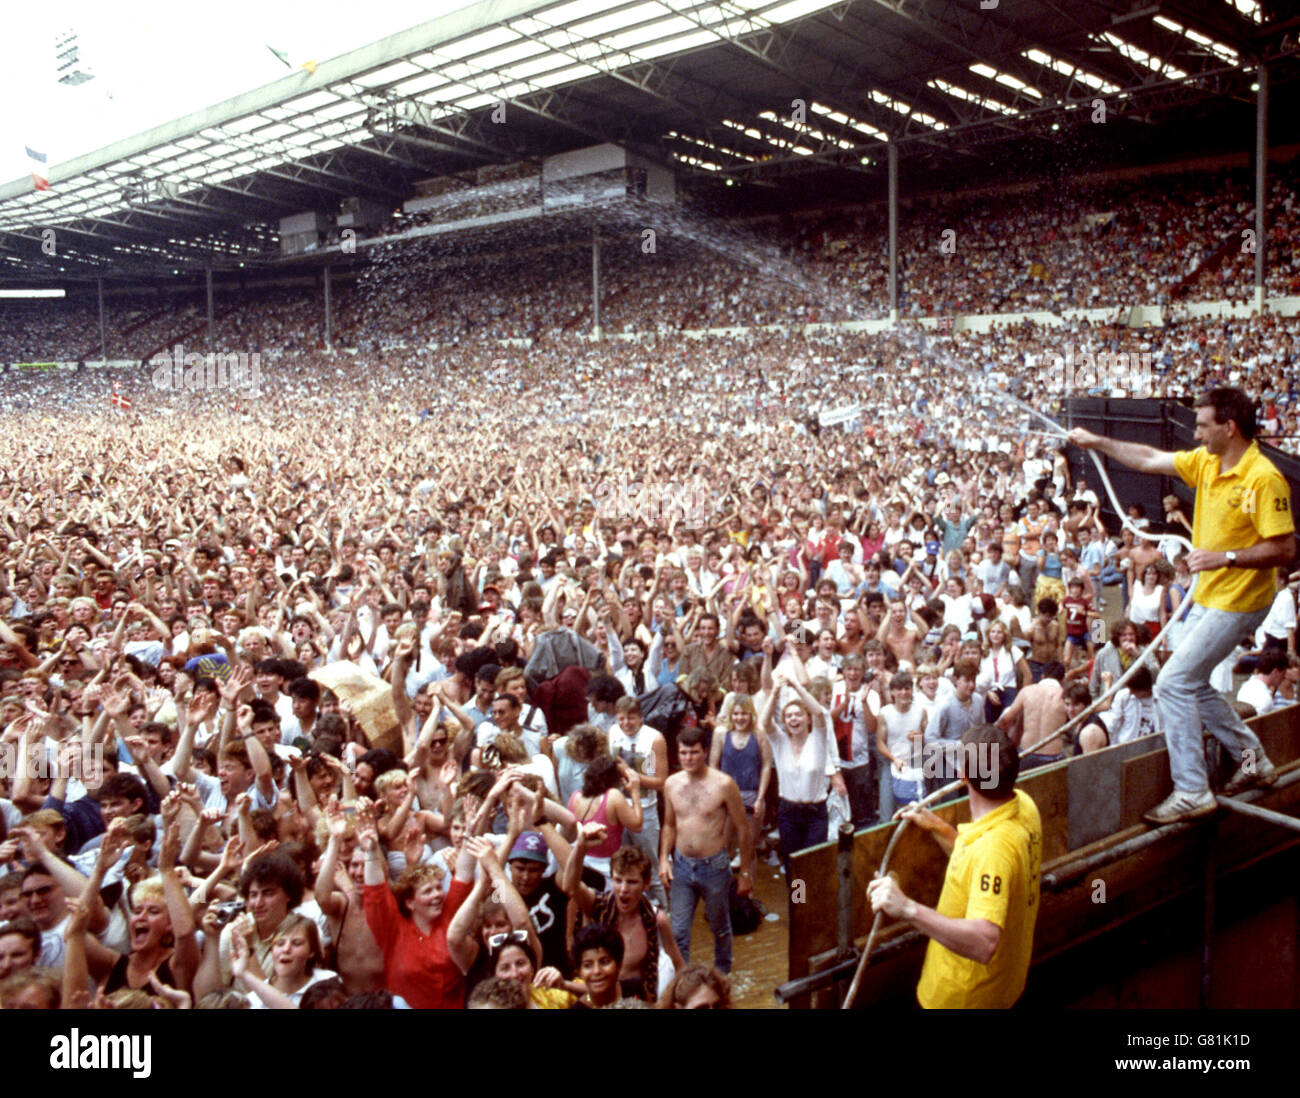 Концерт квин на стадионе. 1985 Квин на стадионе Уэмбли. Концерт группы Queen стадион Уэмбли 1985. Концерт Фредди Меркьюри на стадионе Уэмбли в 1986. Фредди Меркьюри Уэмбли 1985.